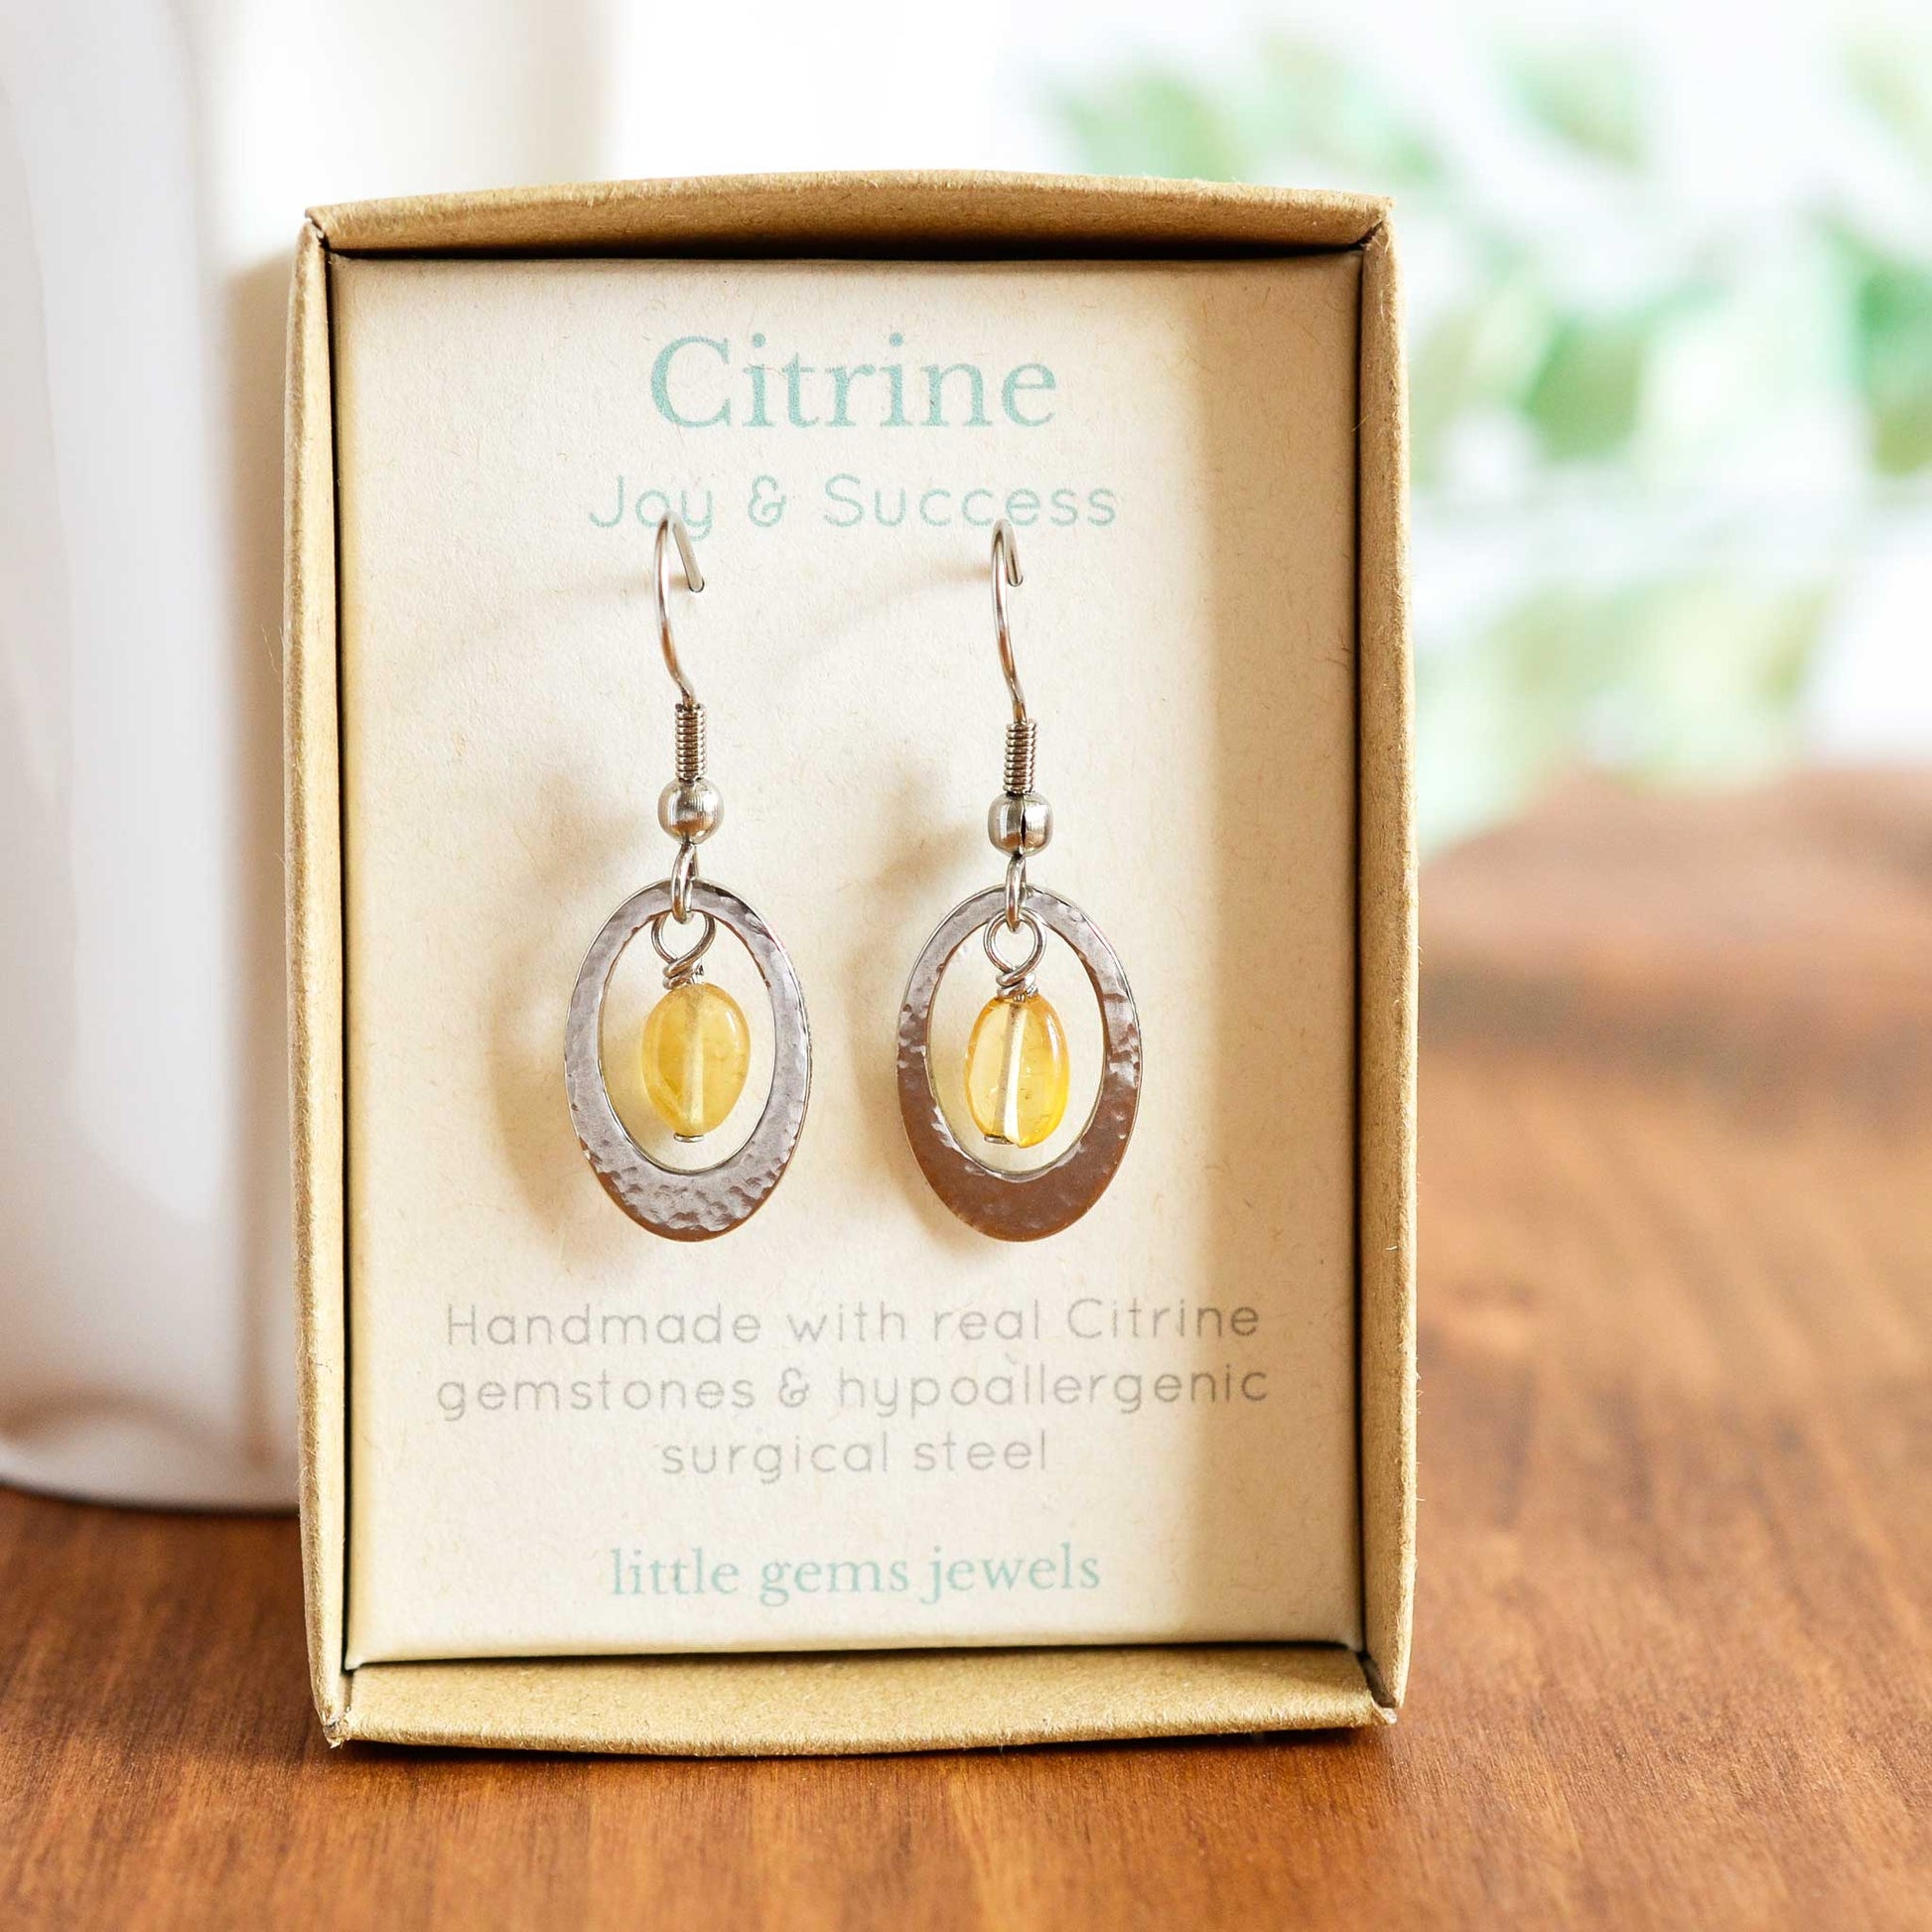 Citrine gemstone drop earrings in gift box